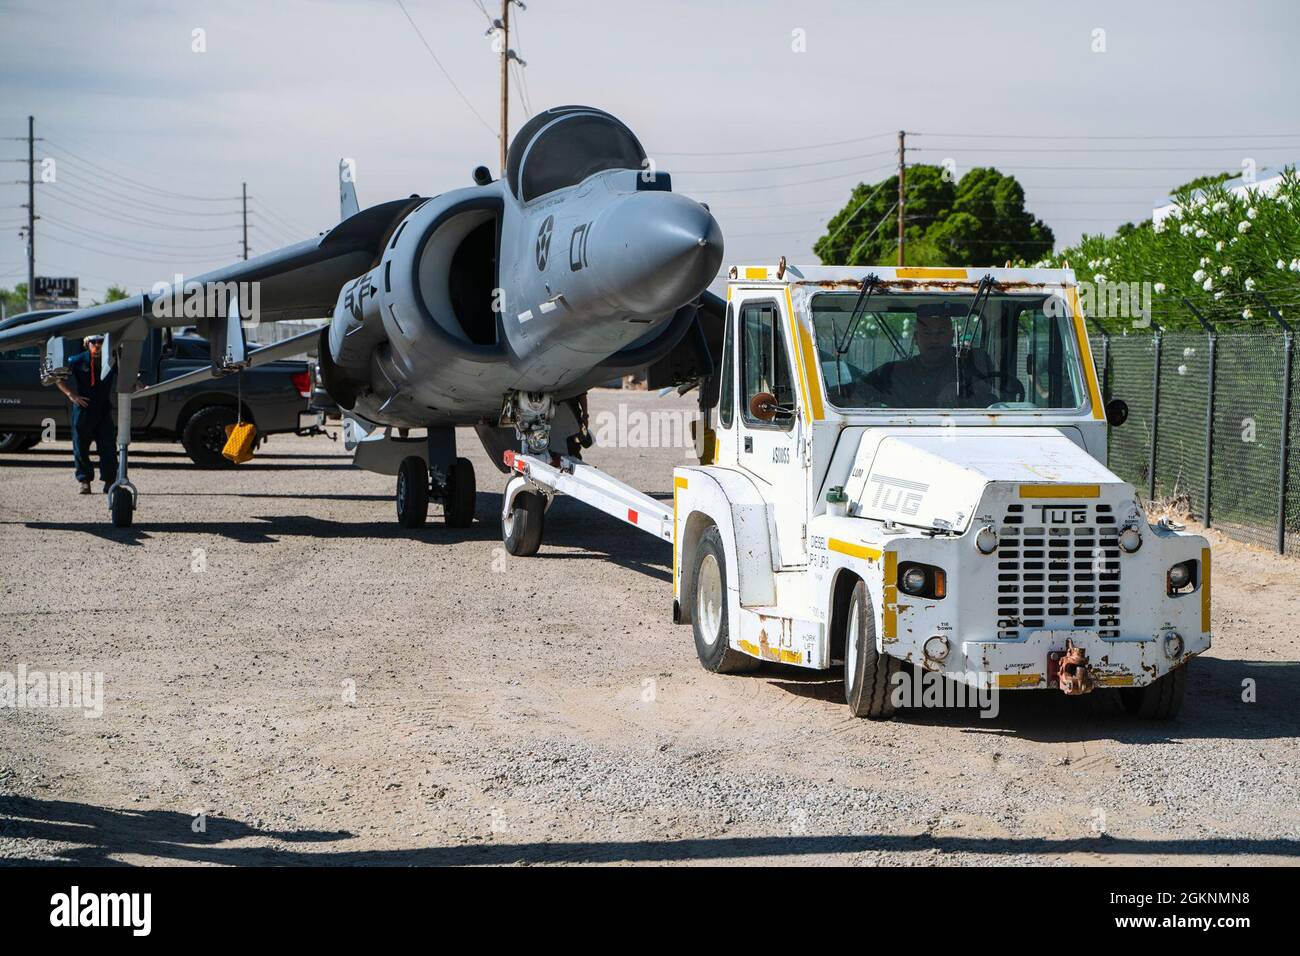 Un avion AV-8B Harrier est transporté à travers la station aérienne du corps des Marines Yuma, le 7 juin 2021. Le Harrier est maintenant un écran statique près de l'entrée de la station aérienne. Banque D'Images